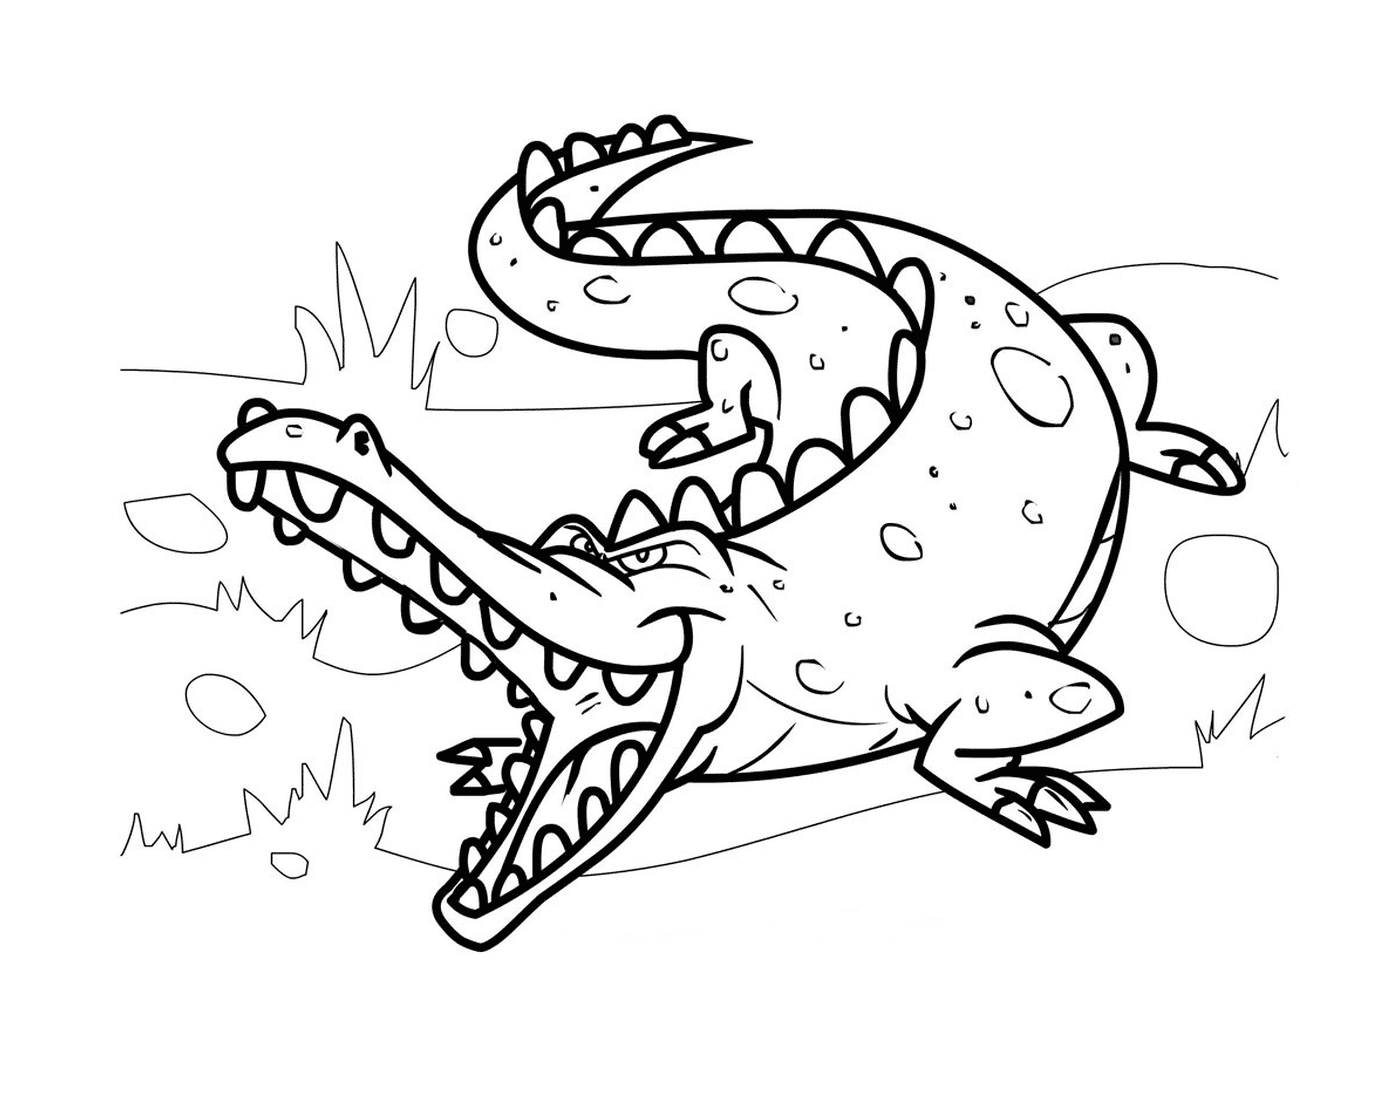  Um crocodilo médio em seu habitat natural, em estilo Cartoon 